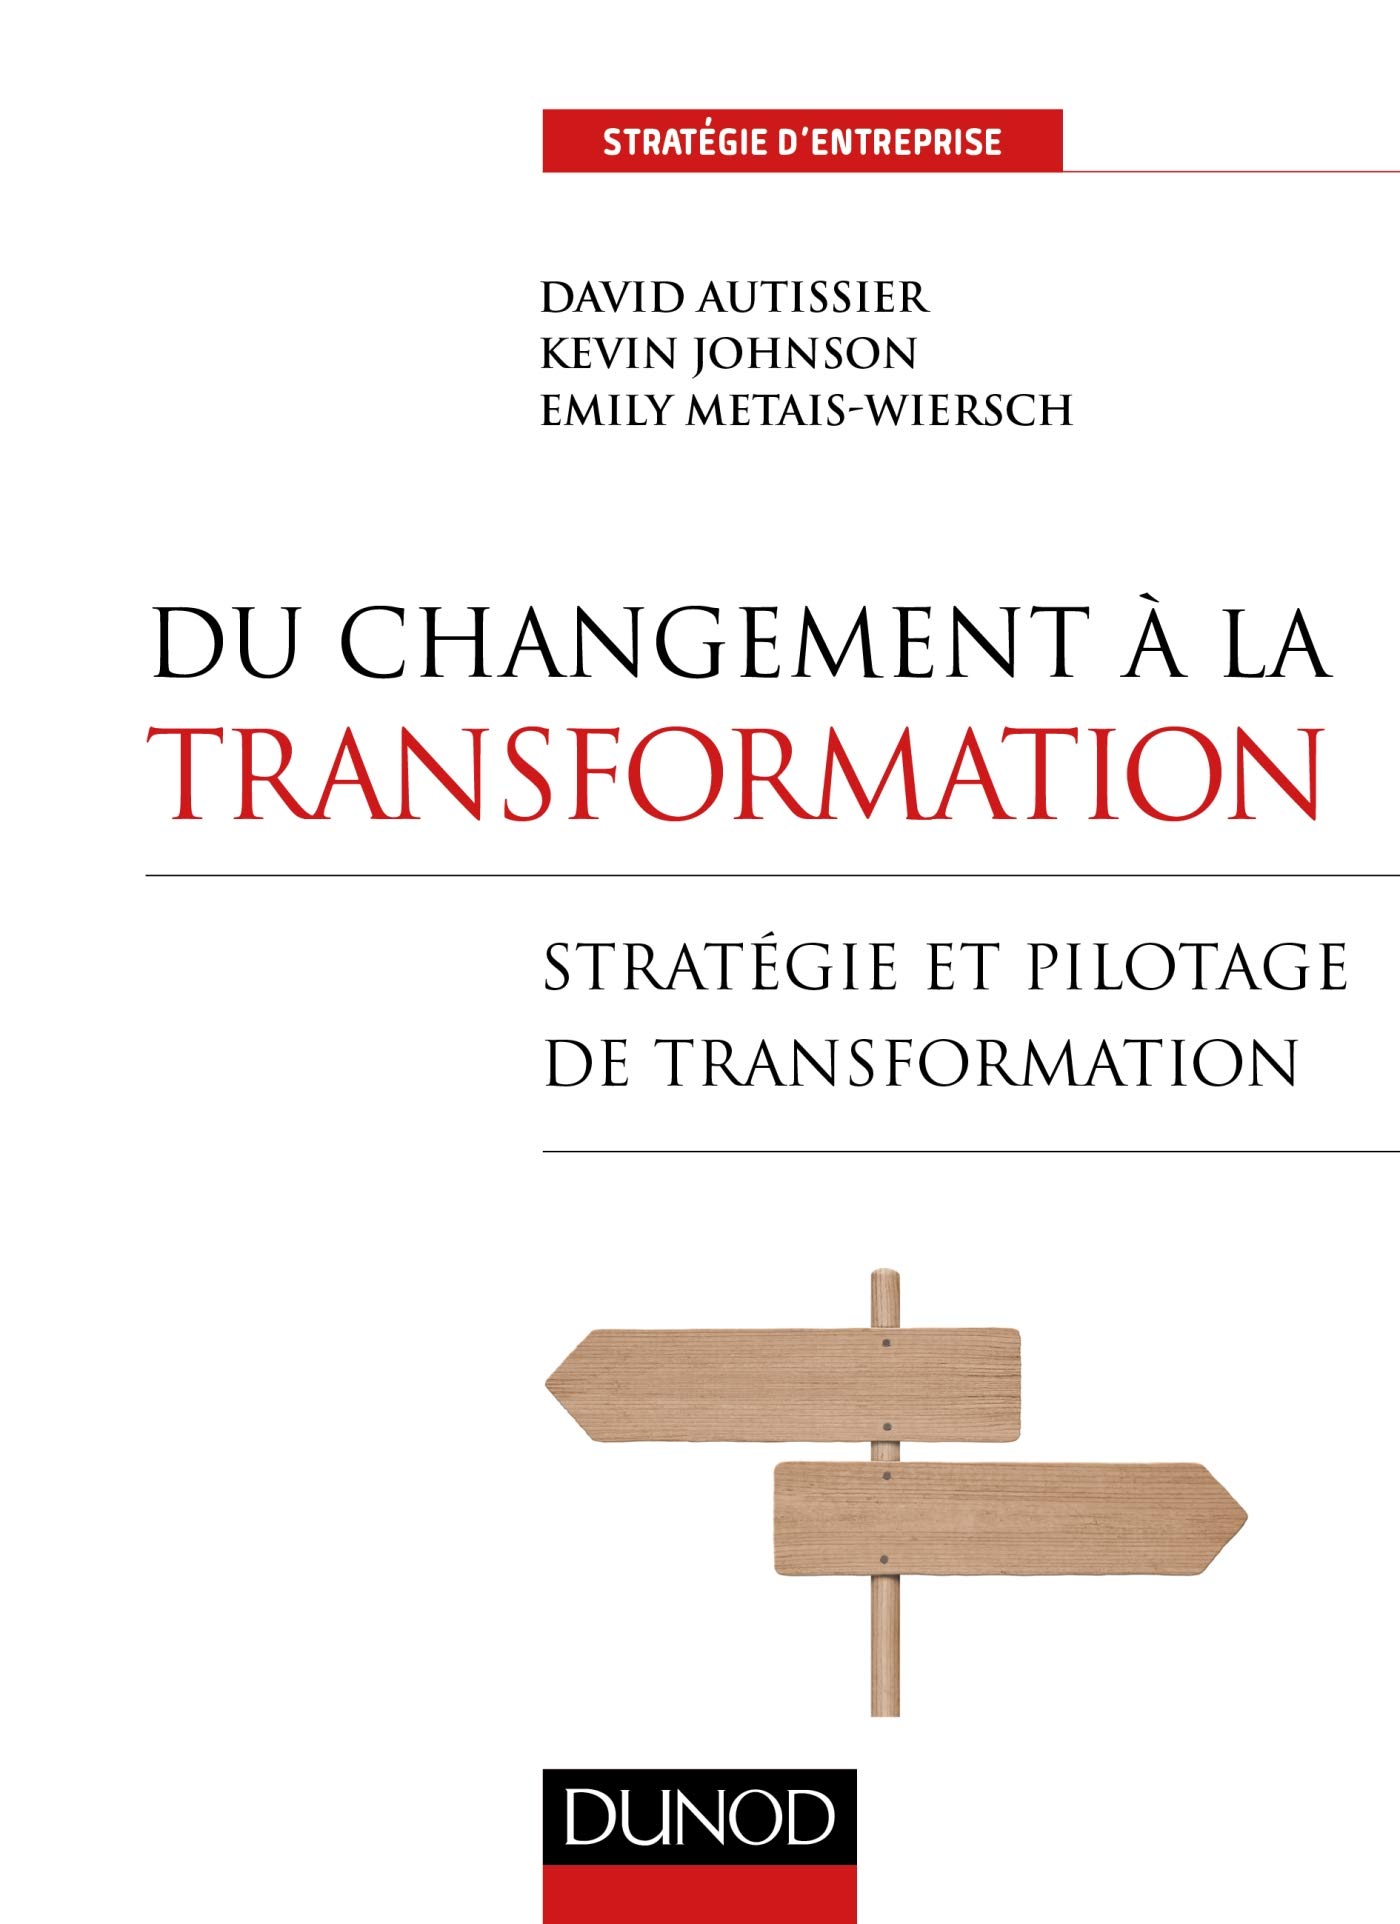 Du changement à la transformation - Stratégie et pilotage de transformation: Stratégie et pilotage de transformation.